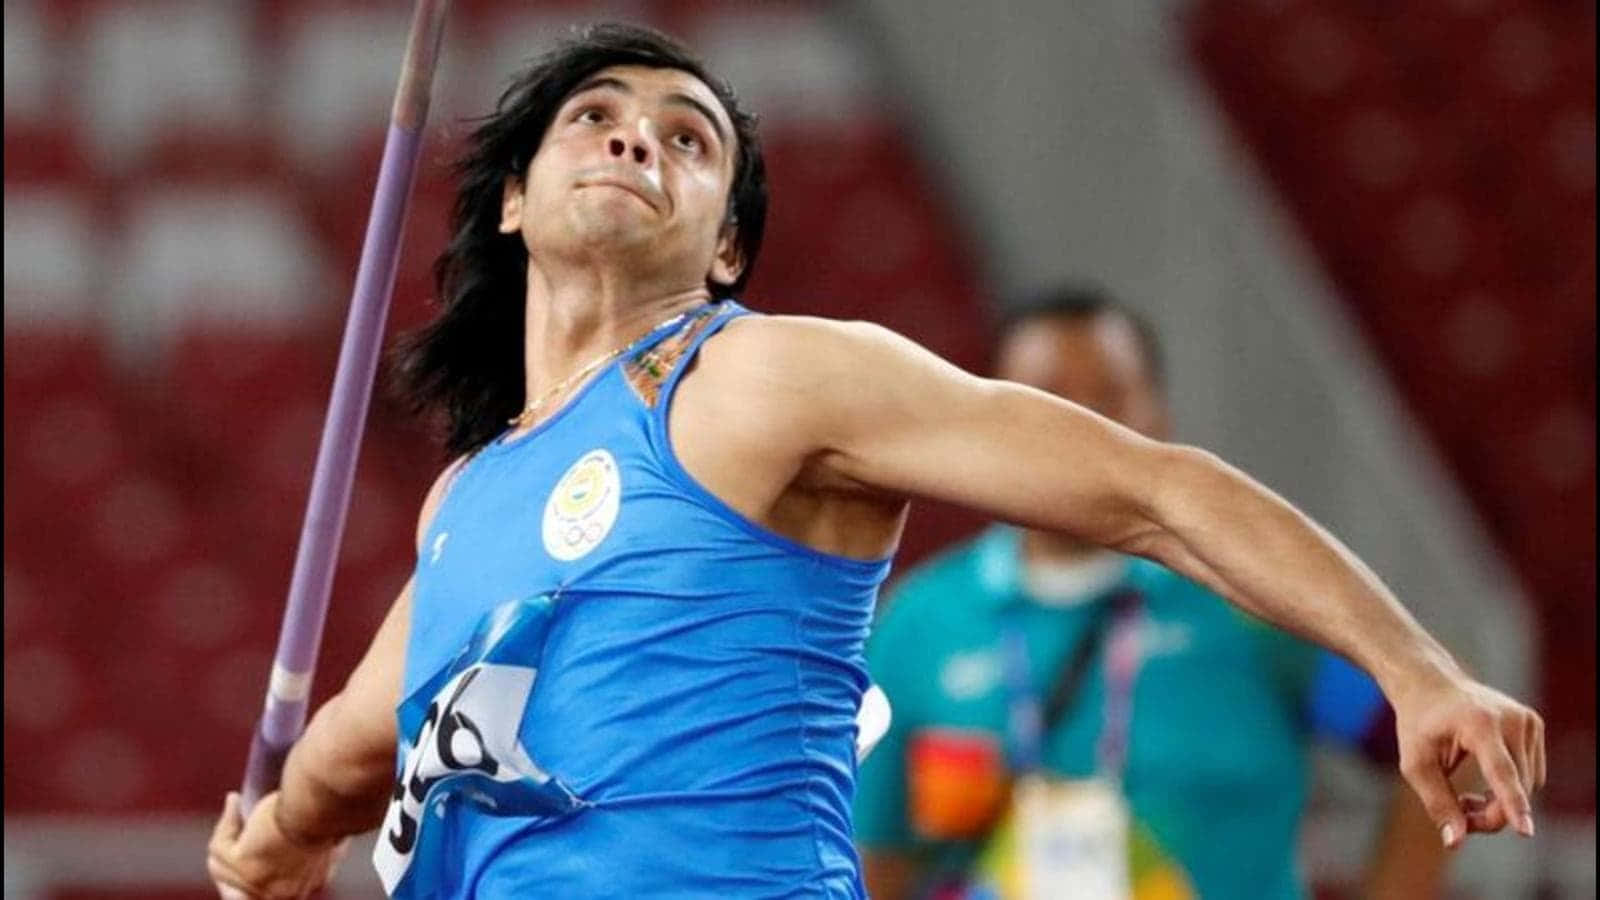 Neerajchopra - Indisk Spjutkastare Och Vinnare Av Guldmedaljen I 2018 Commonwealth Games.